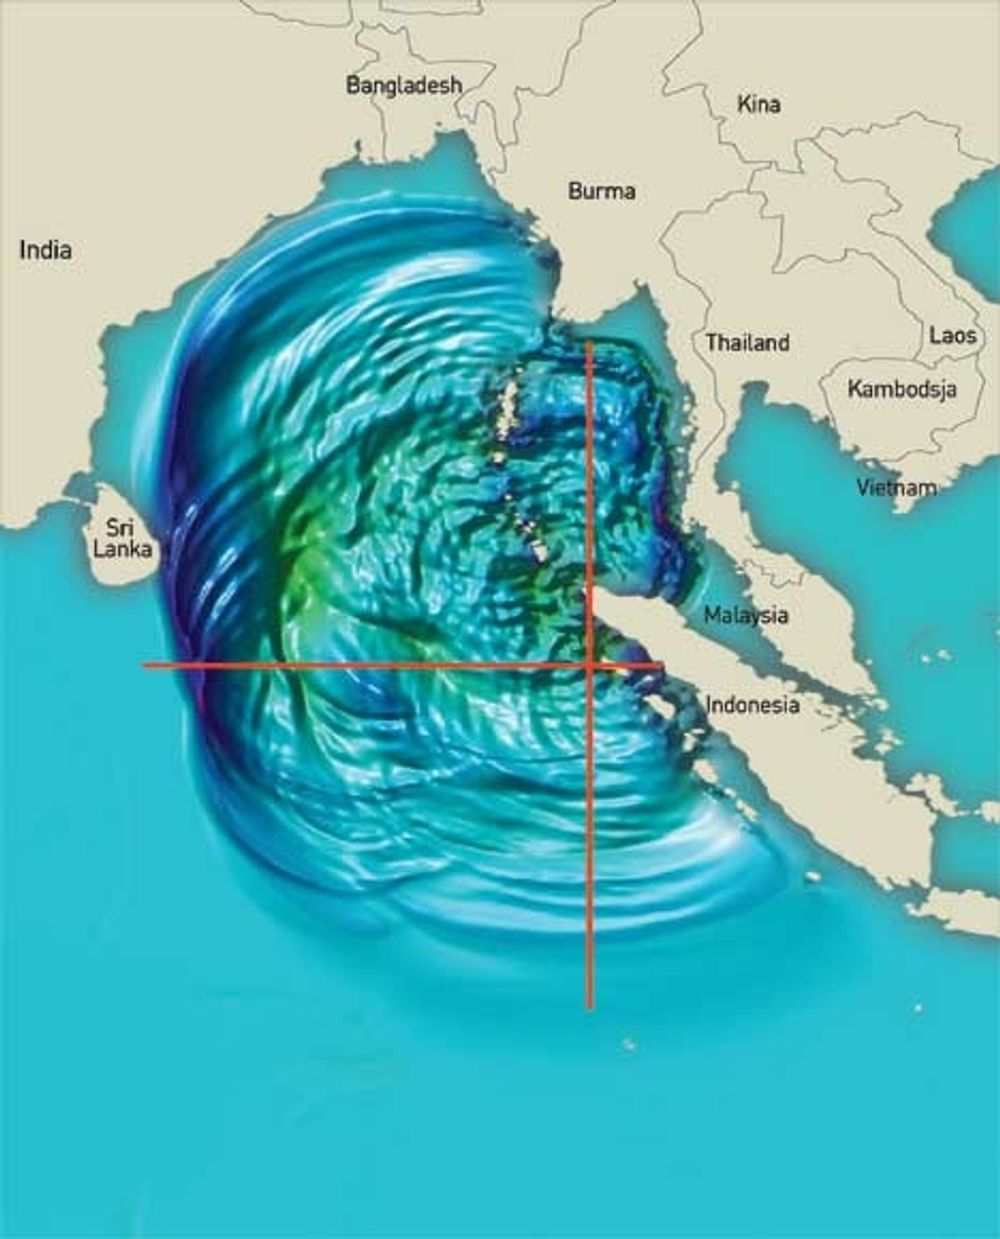 Jordskjelvet vest for Sumatra i Indonesia satte enorme vannmasser i bevegelse. På vei mot India passerte bølgen havdyp på 4000 meter. Hastigheten på vannmassen/bølgen kom op i 700 kilometer i timen. ILL: ICG/Heidi Bredesen